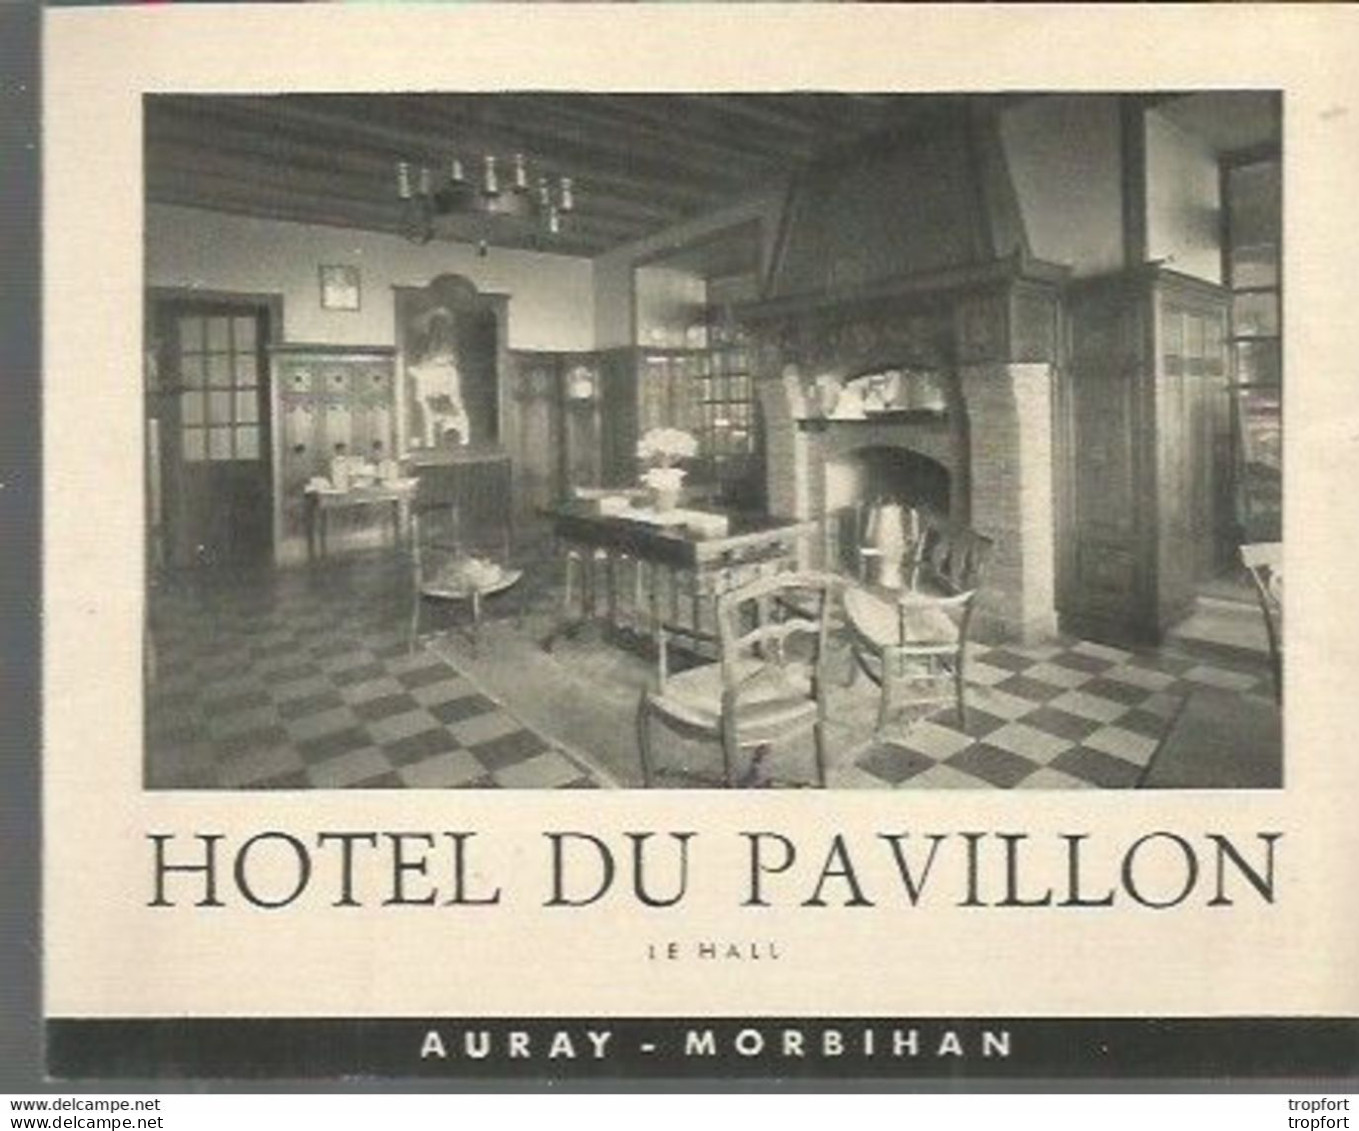 E3 / Tourist Brochure / Livret Publicitaire HOTEL DU PAVILLON AURAY Morbihan - Tourism Brochures